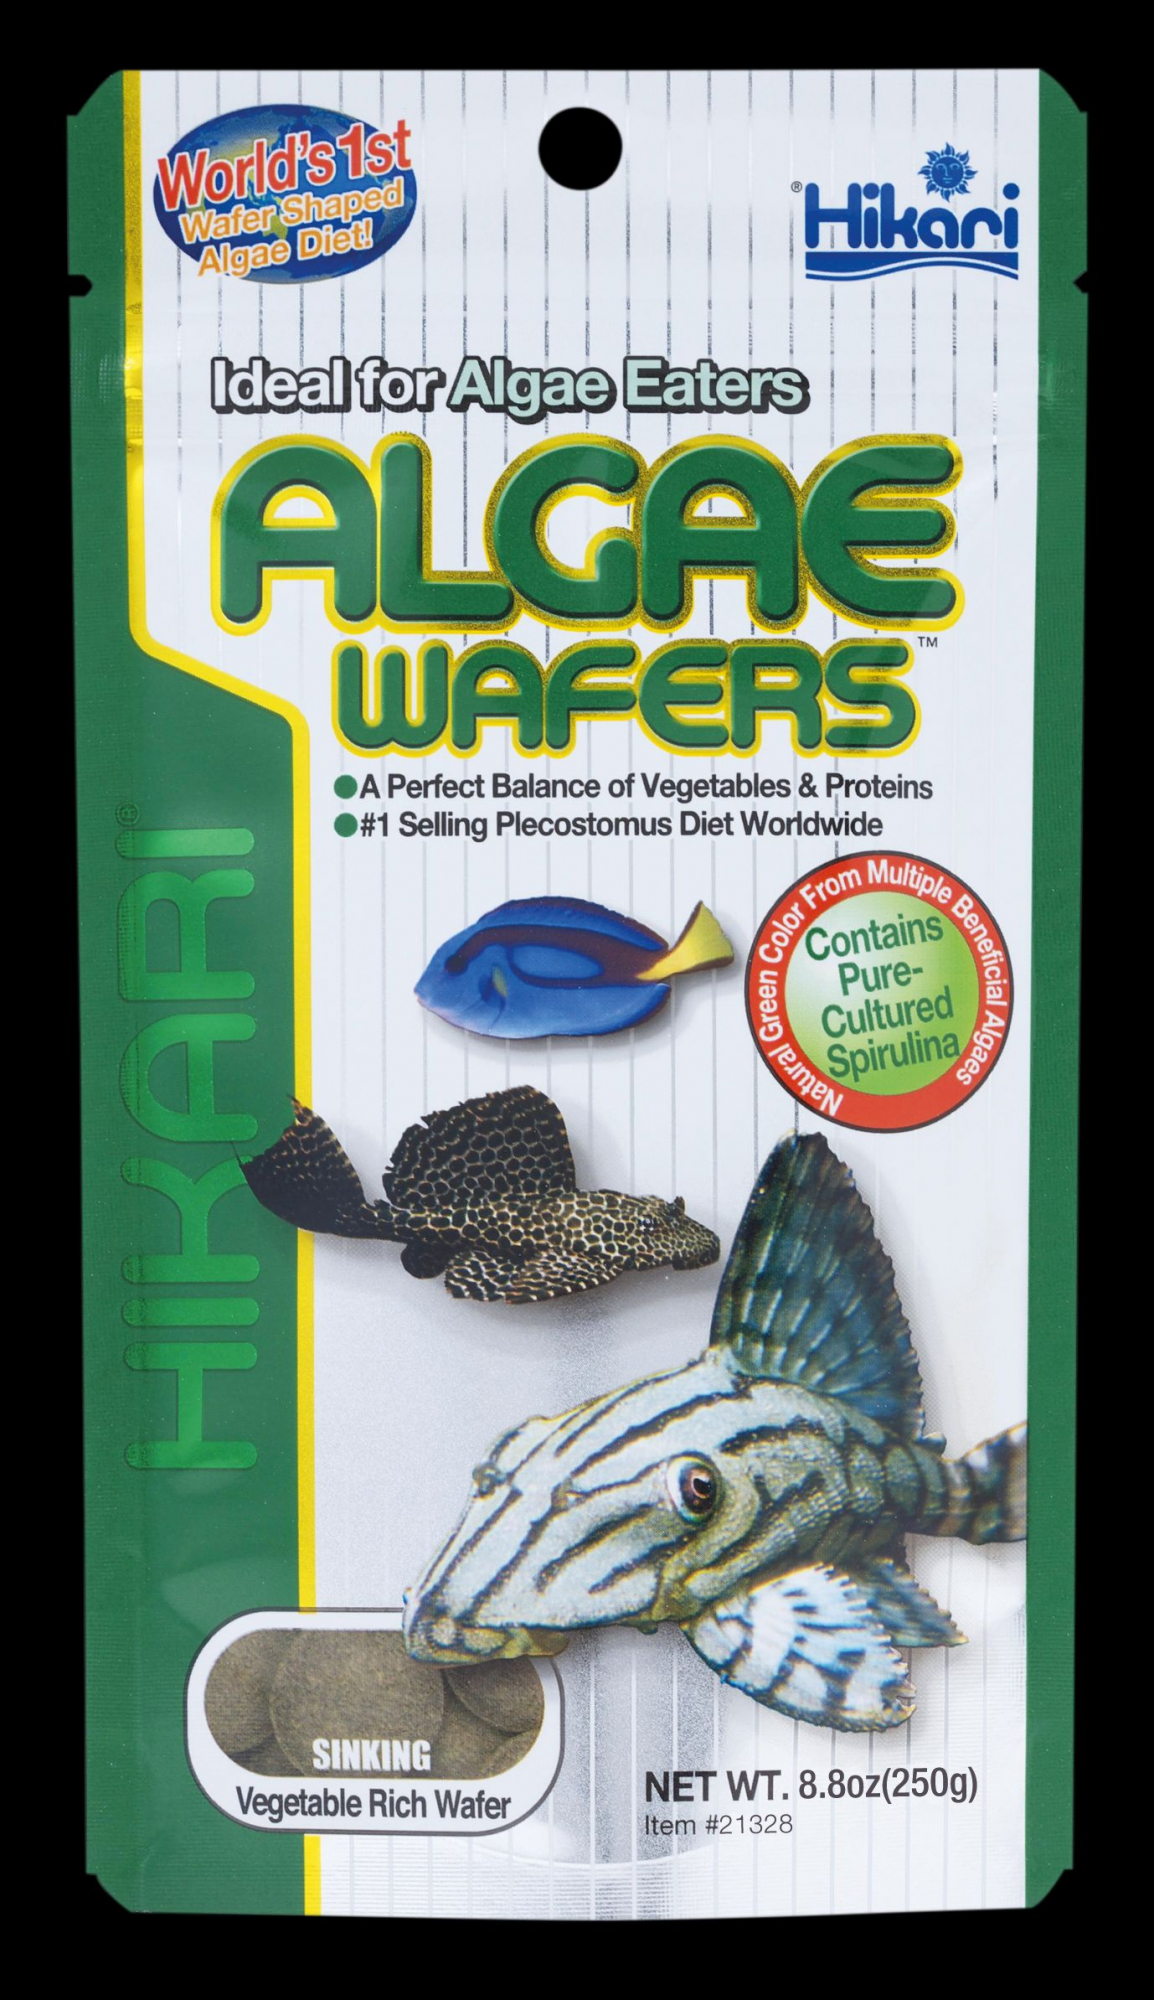 Hikari Algae Wafers voor herbivore bodemvissen